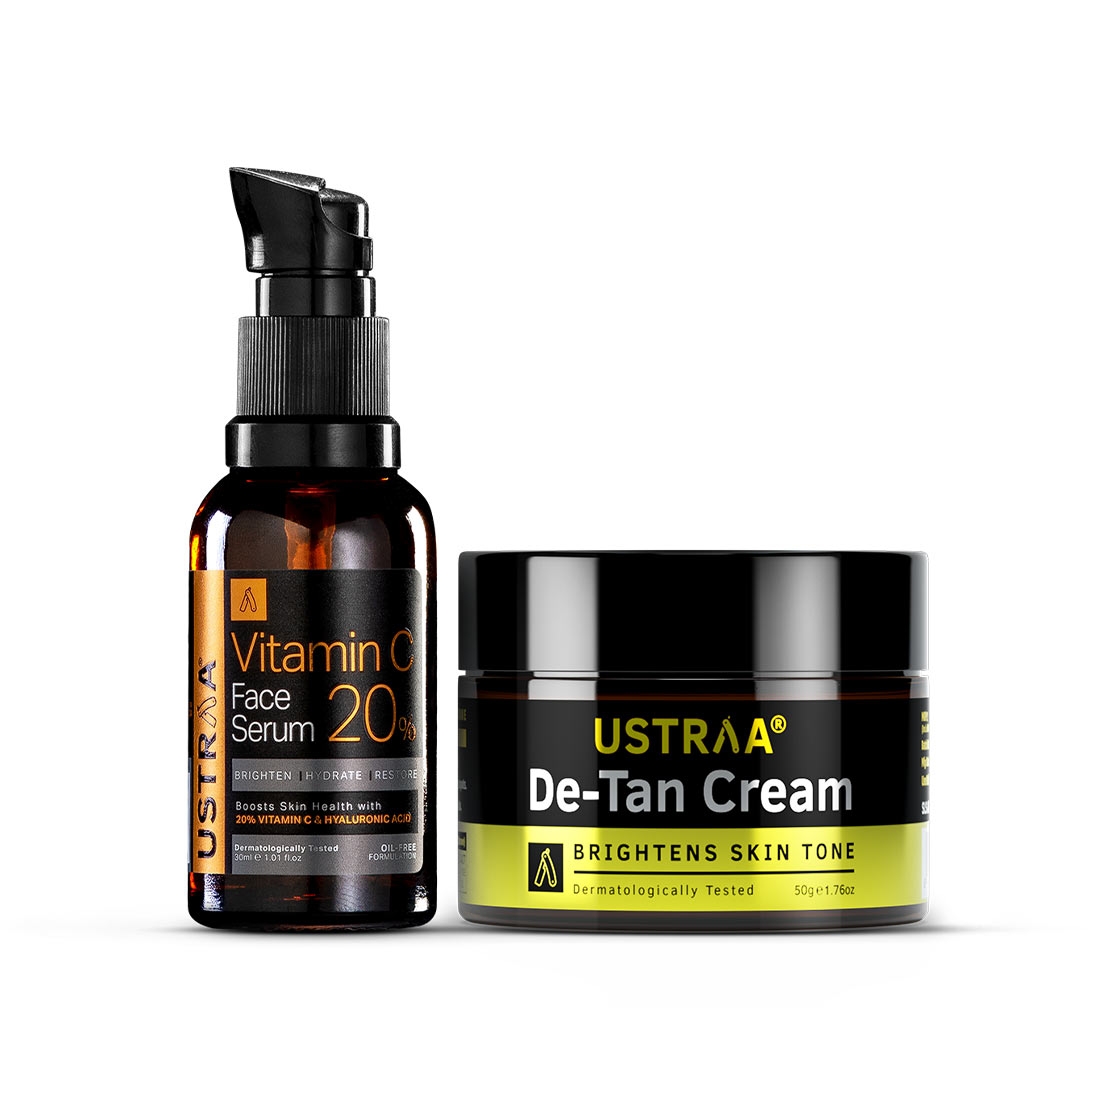 Ustraa | Ustraa Vitamin C Face Serum - 30ml & De-Tan Cream for Men - 50g